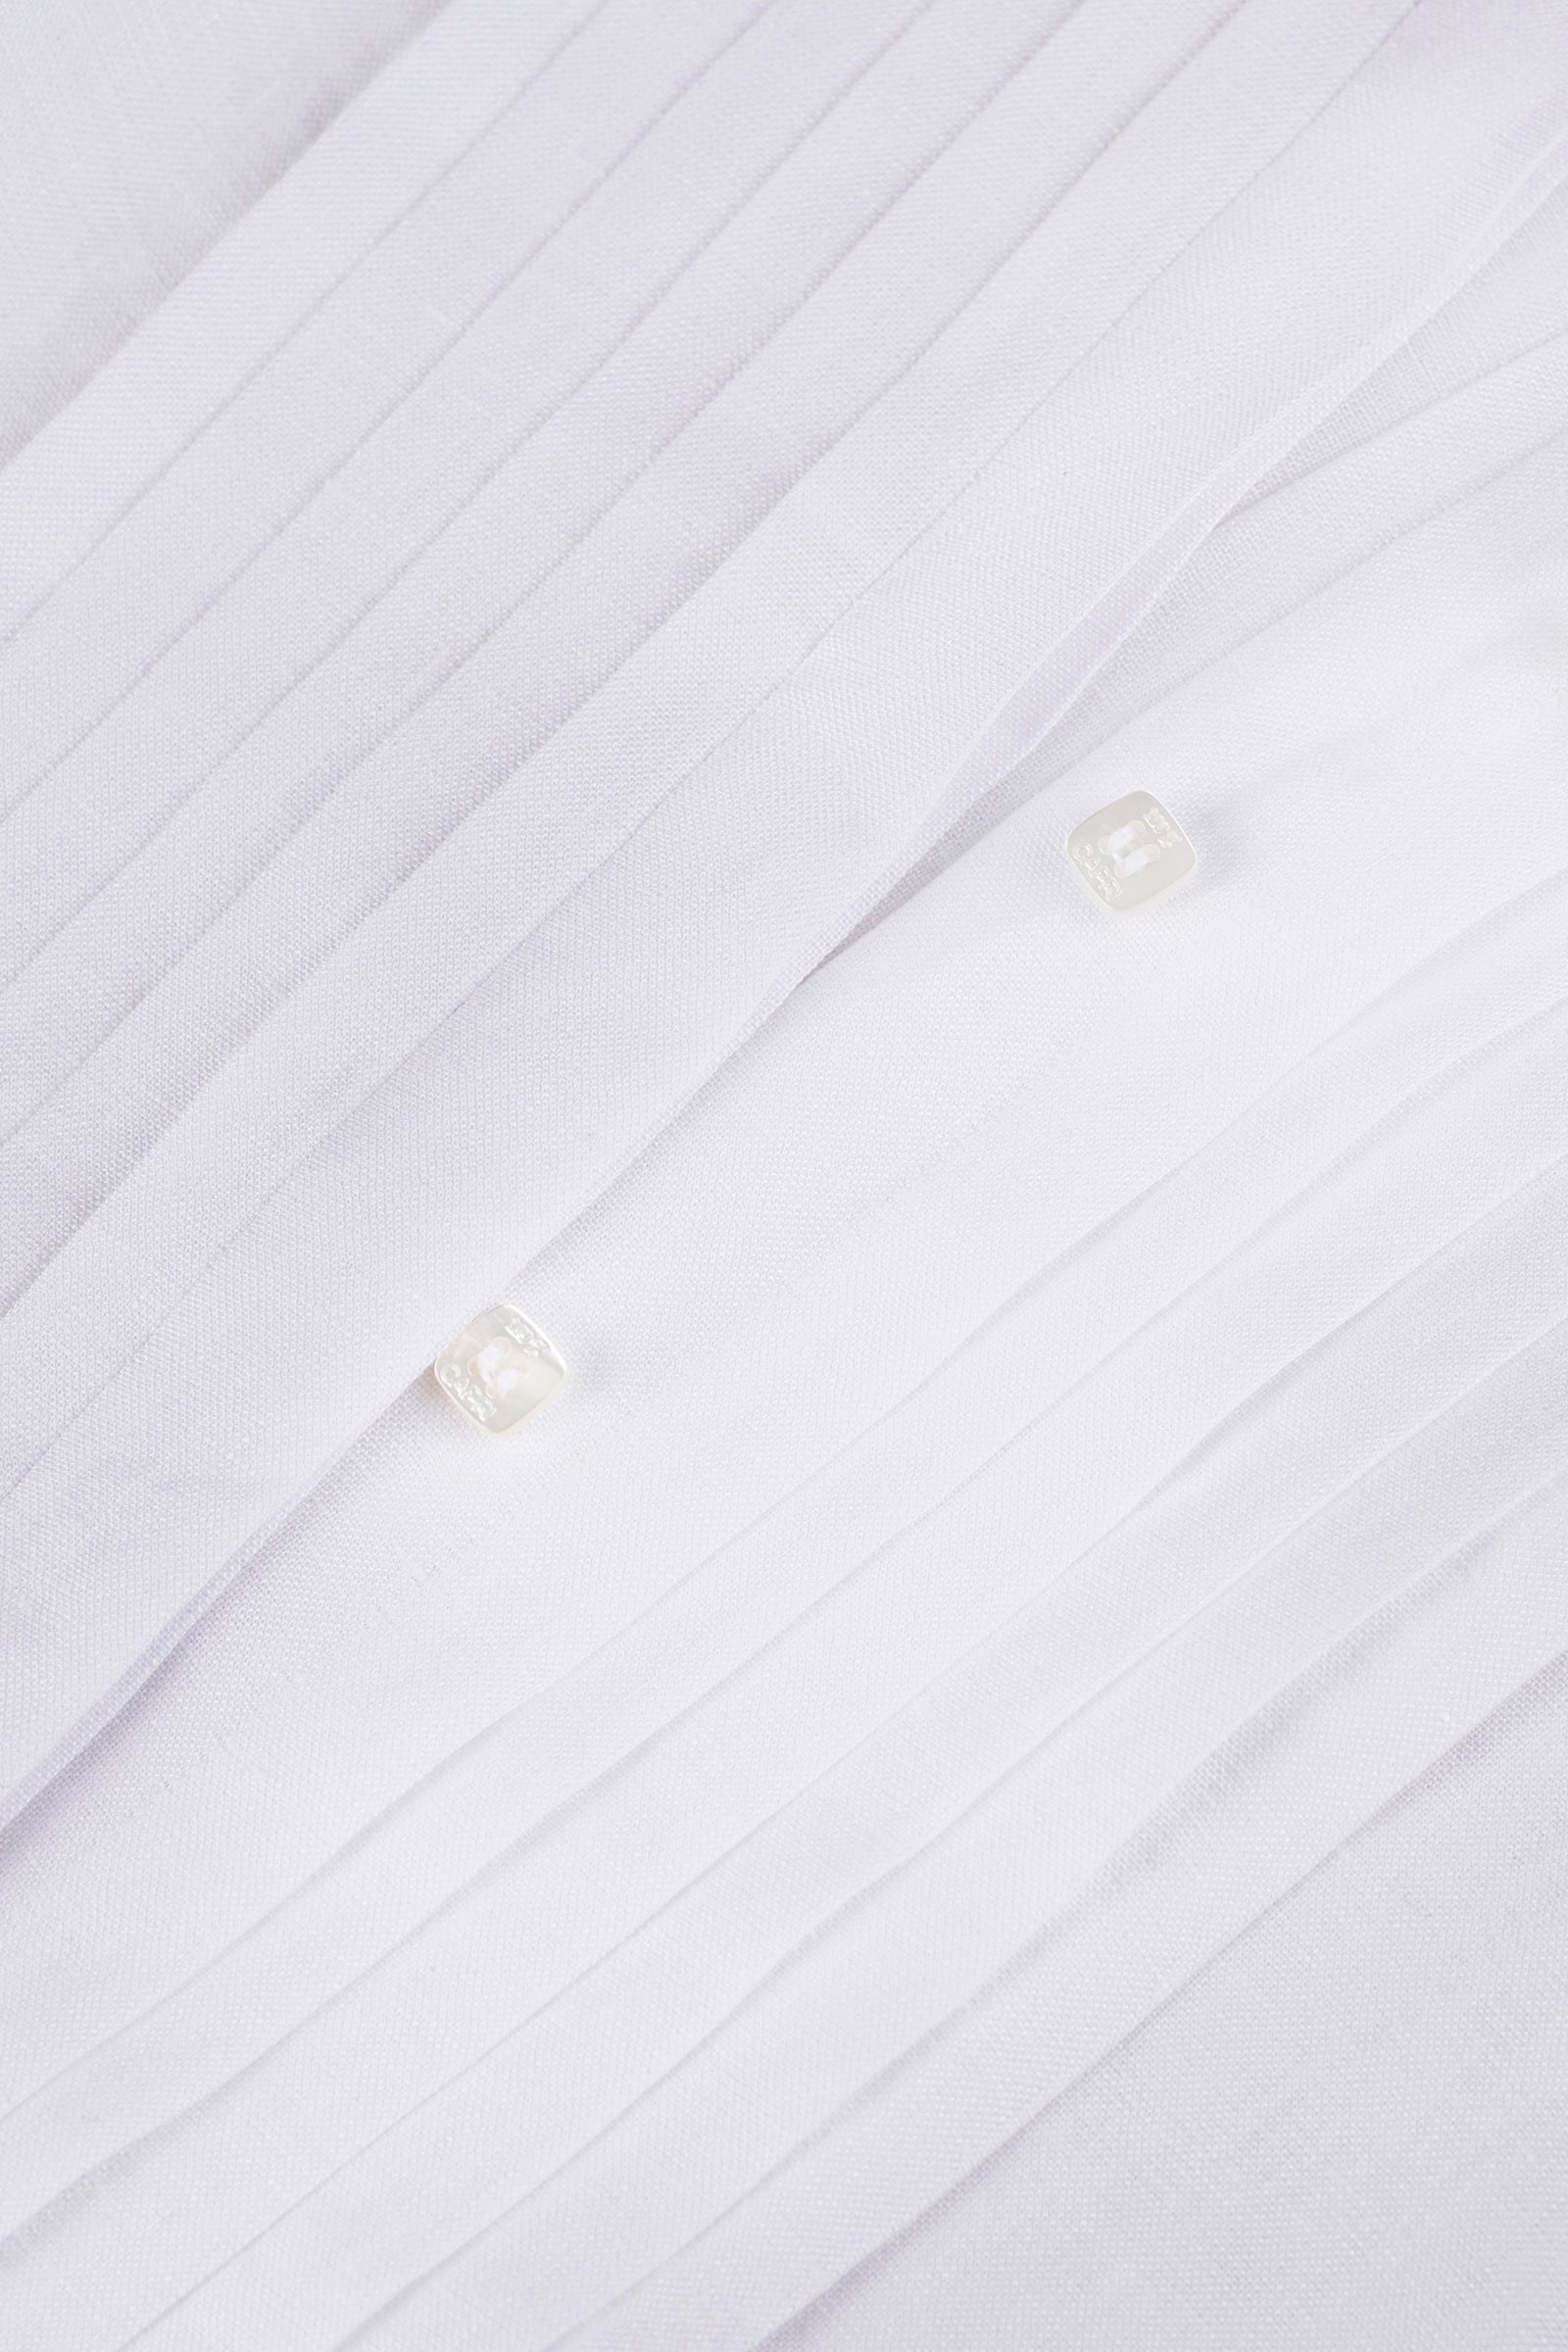 Camicia Plissé Long 100% Capri white linen shirt detail